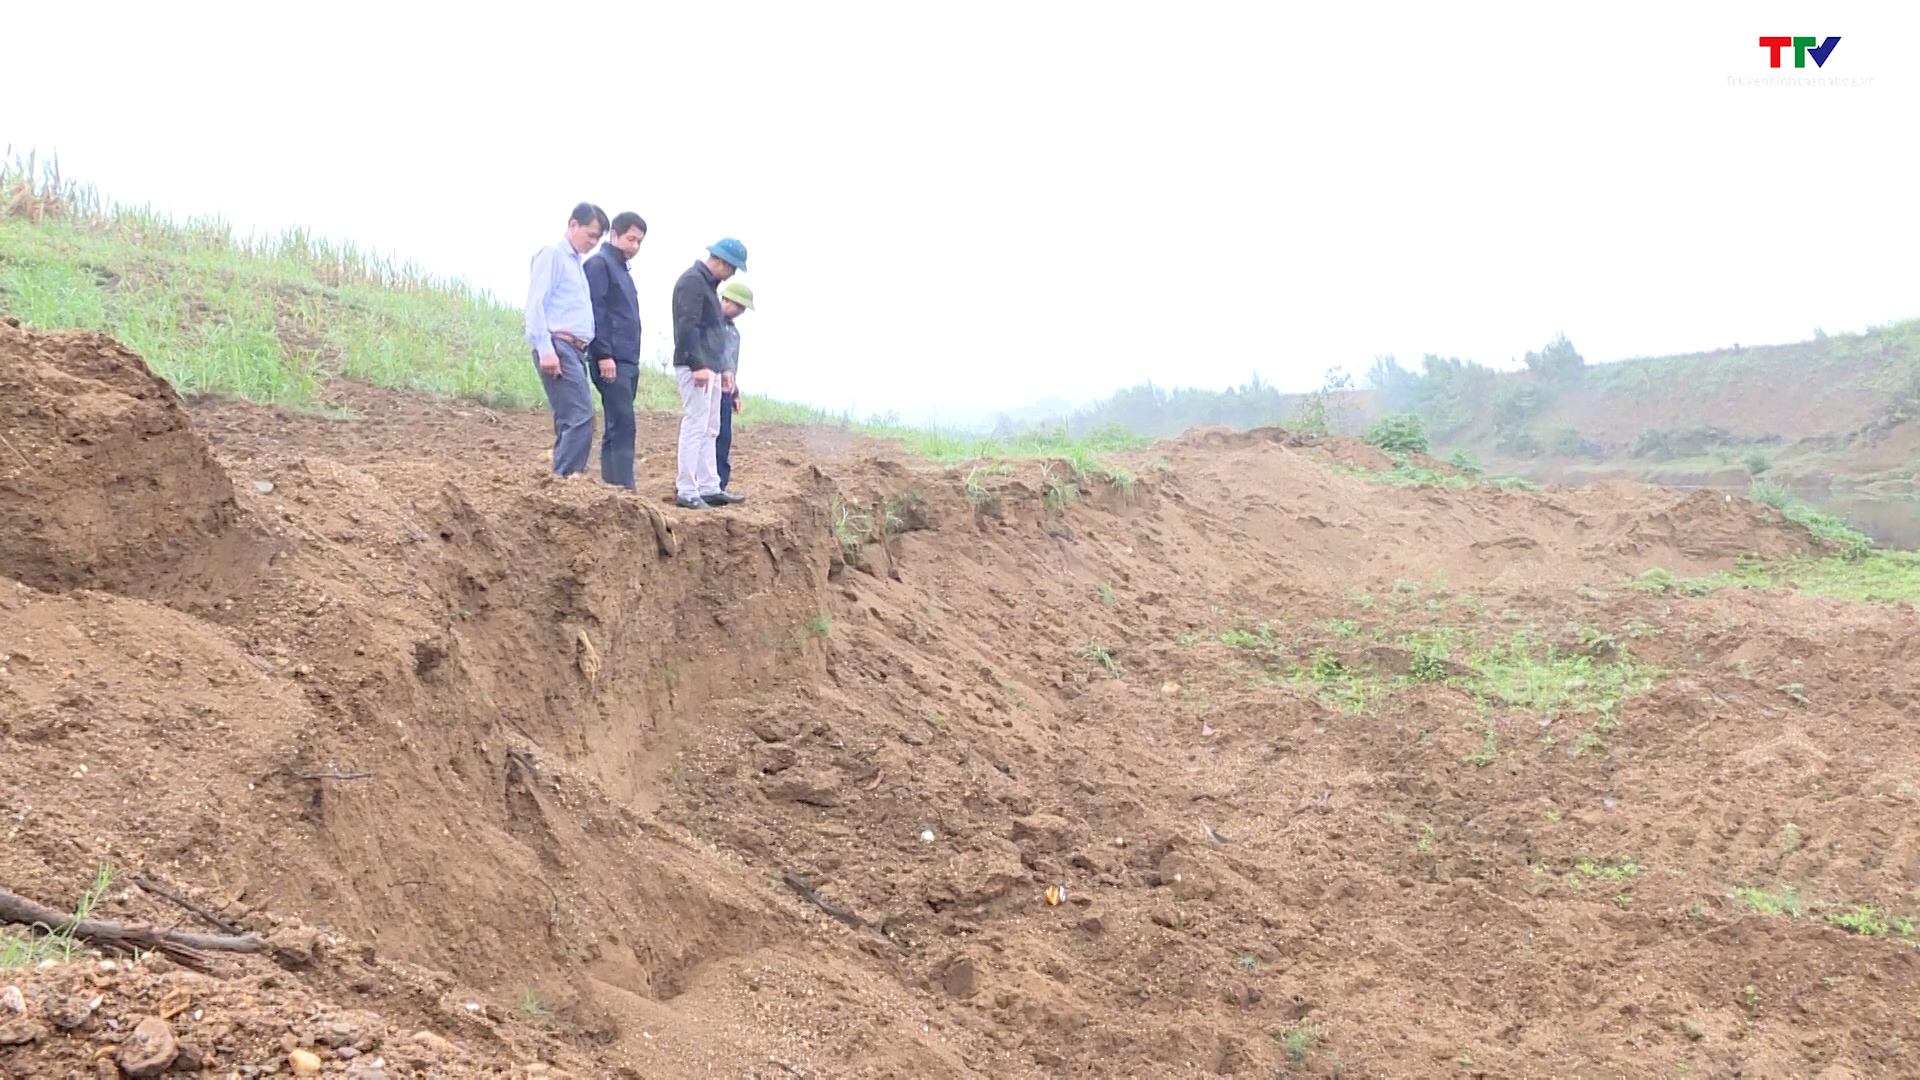 Cần đánh giá tác động của việc khai thác cát ở xã Thành Mỹ, huyện Thạch Thành - Ảnh 2.